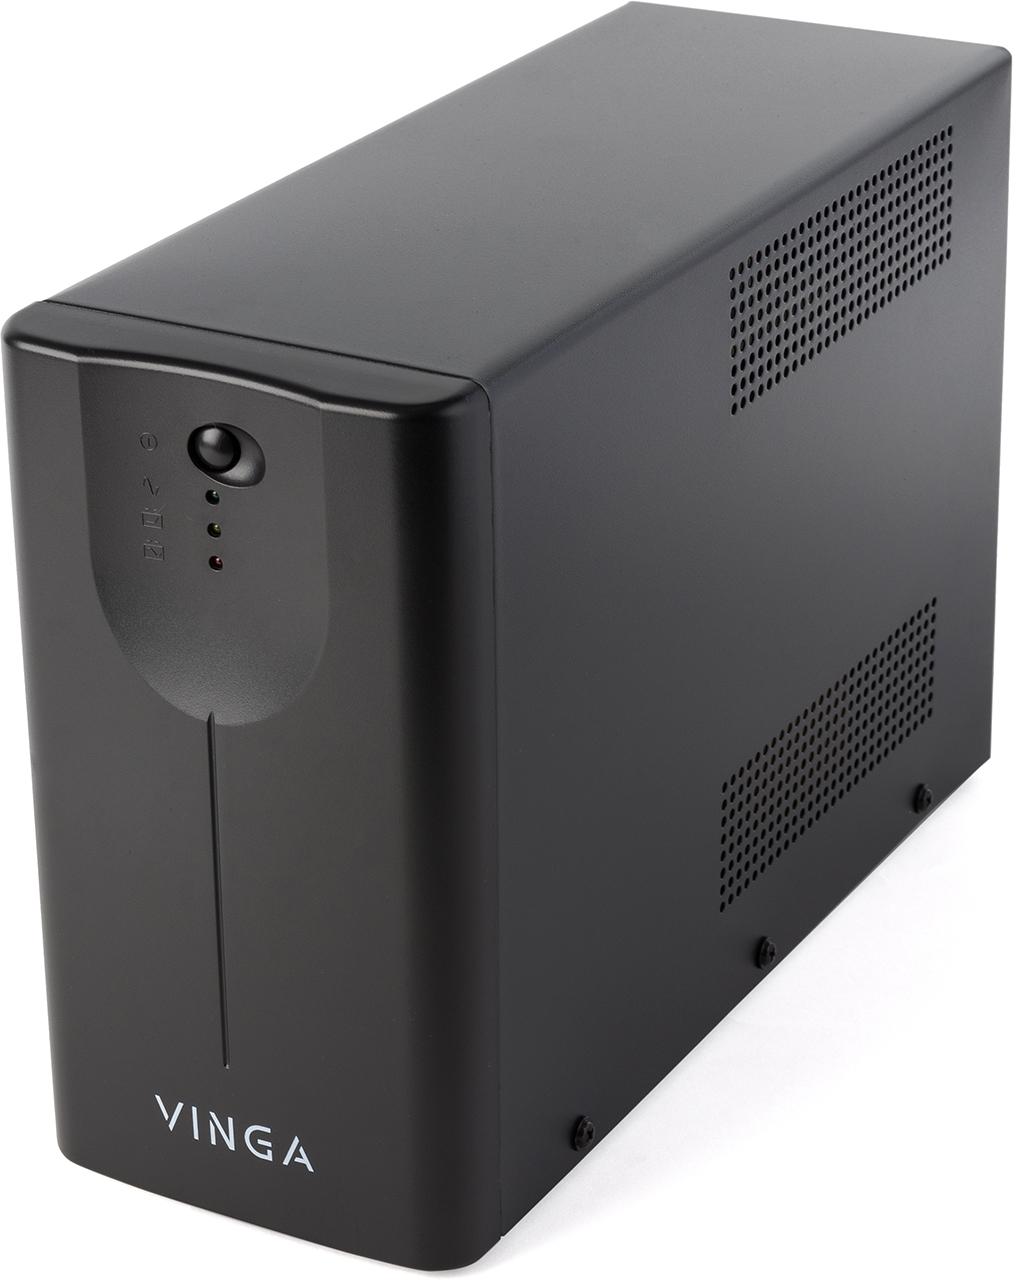 Источник бесперебойного питания Vinga LED 600VA (VPE-600MU) характеристики - фотография 7